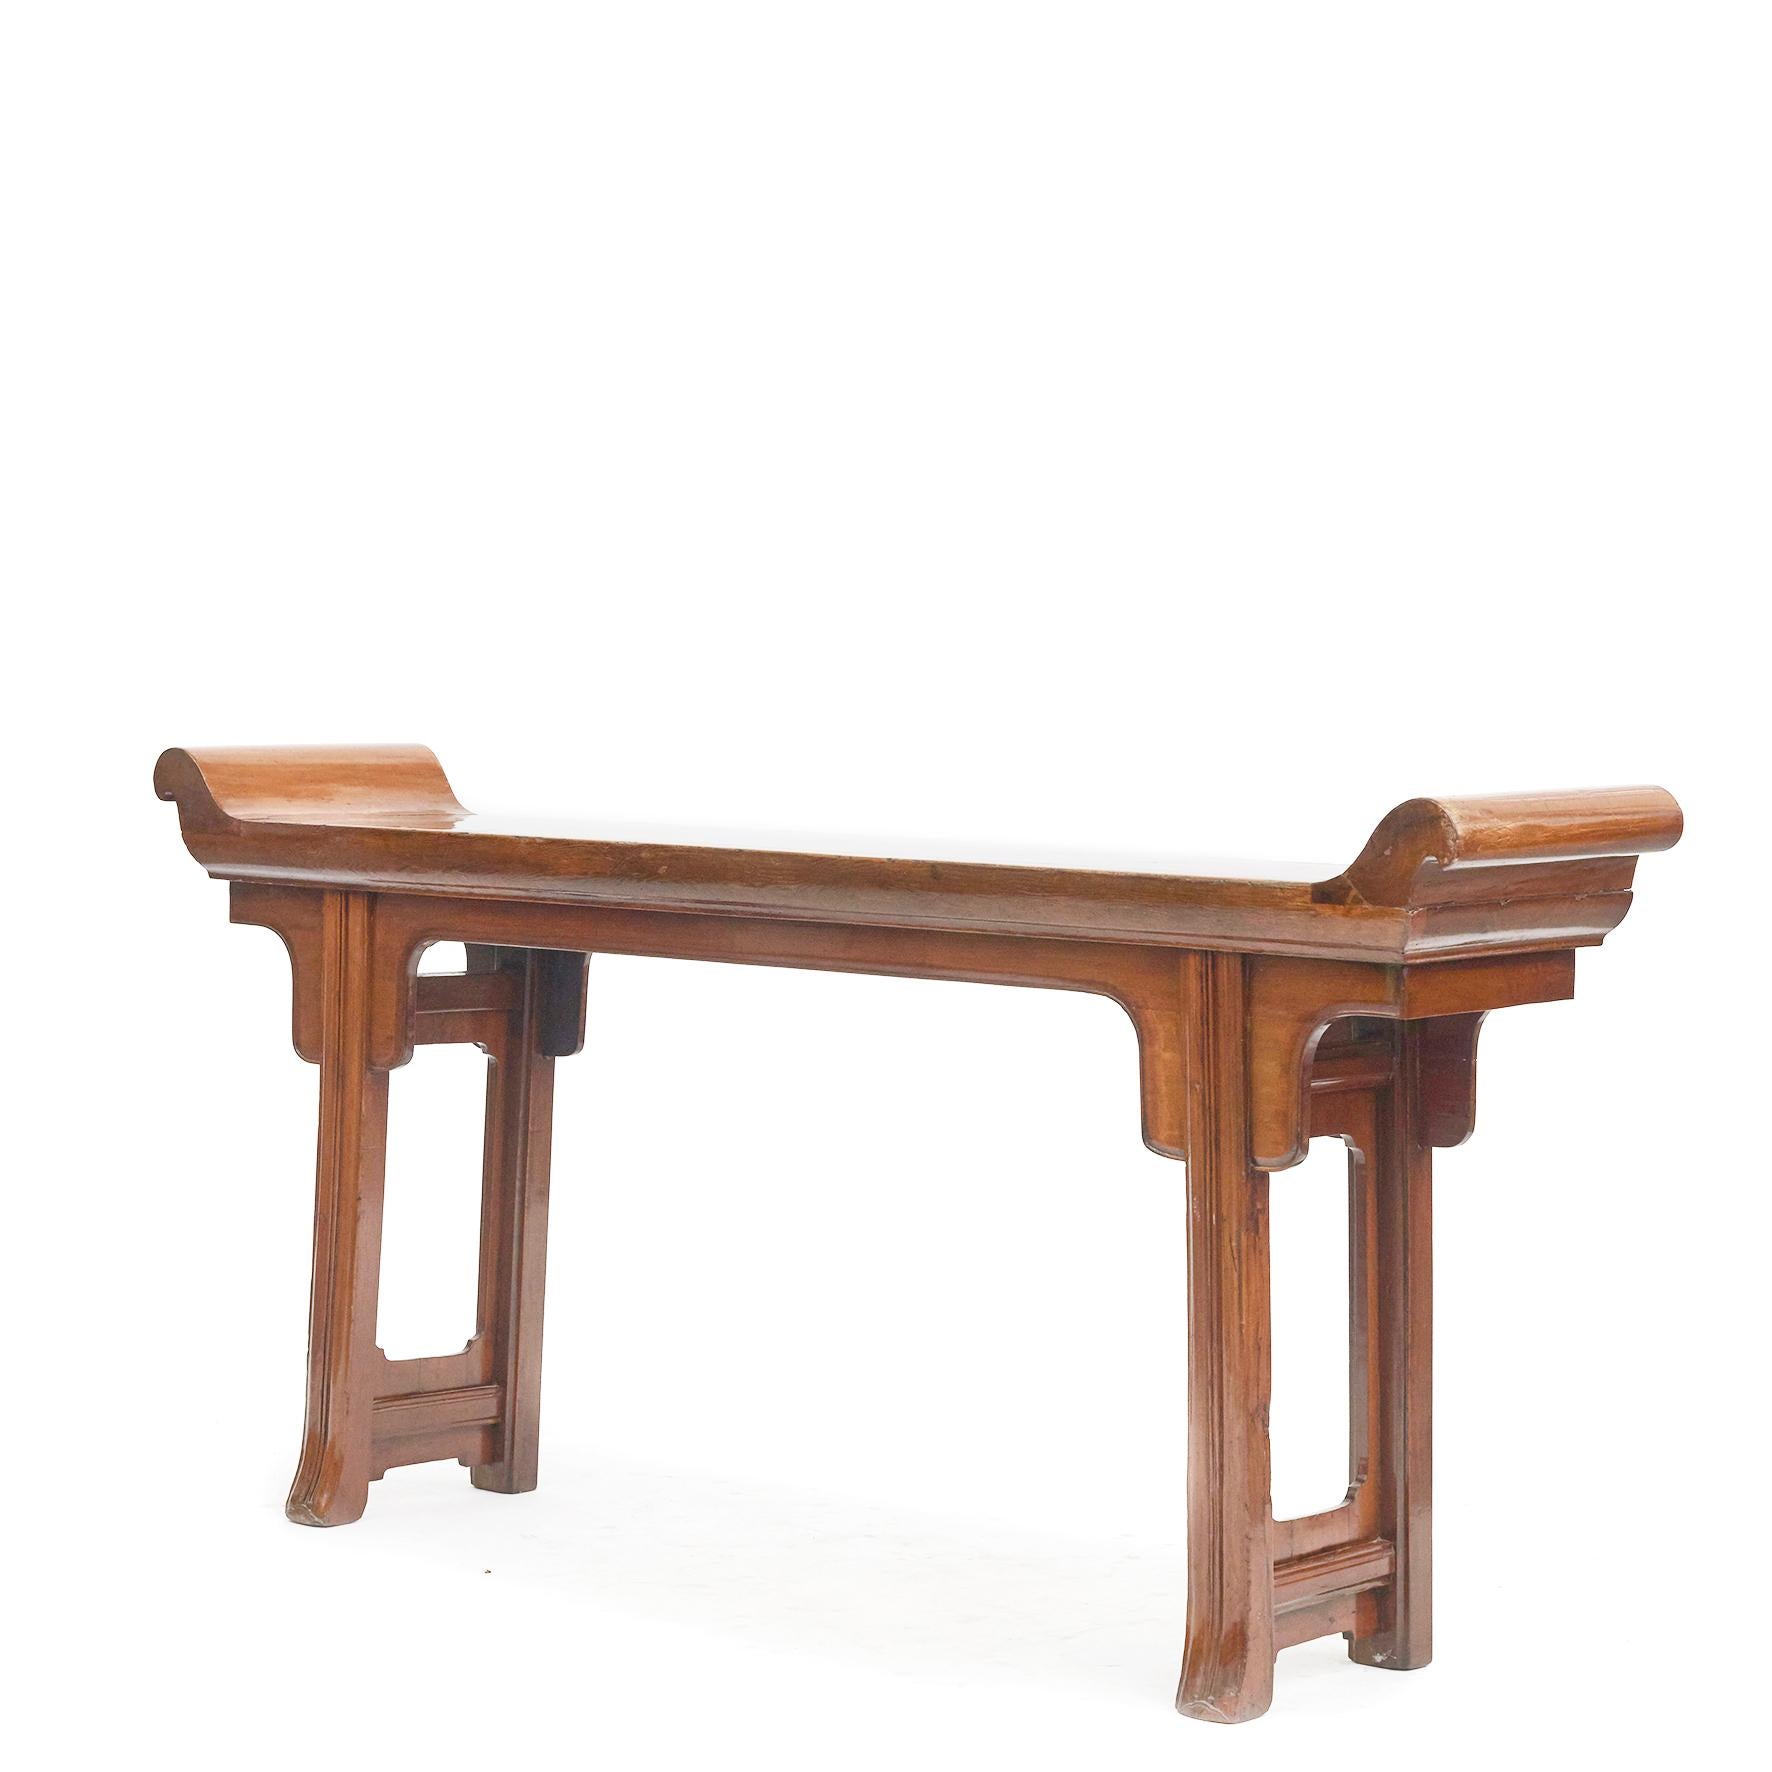 Rare table console d'autel chinoise de la dynastie Qing.
La table d'autel est fabriquée en bois de cyprès, une essence de bois à la teinte chaude et au grain magnifique.
Plateau de table réalisé en une seule pièce de bois, avec des rebords et des